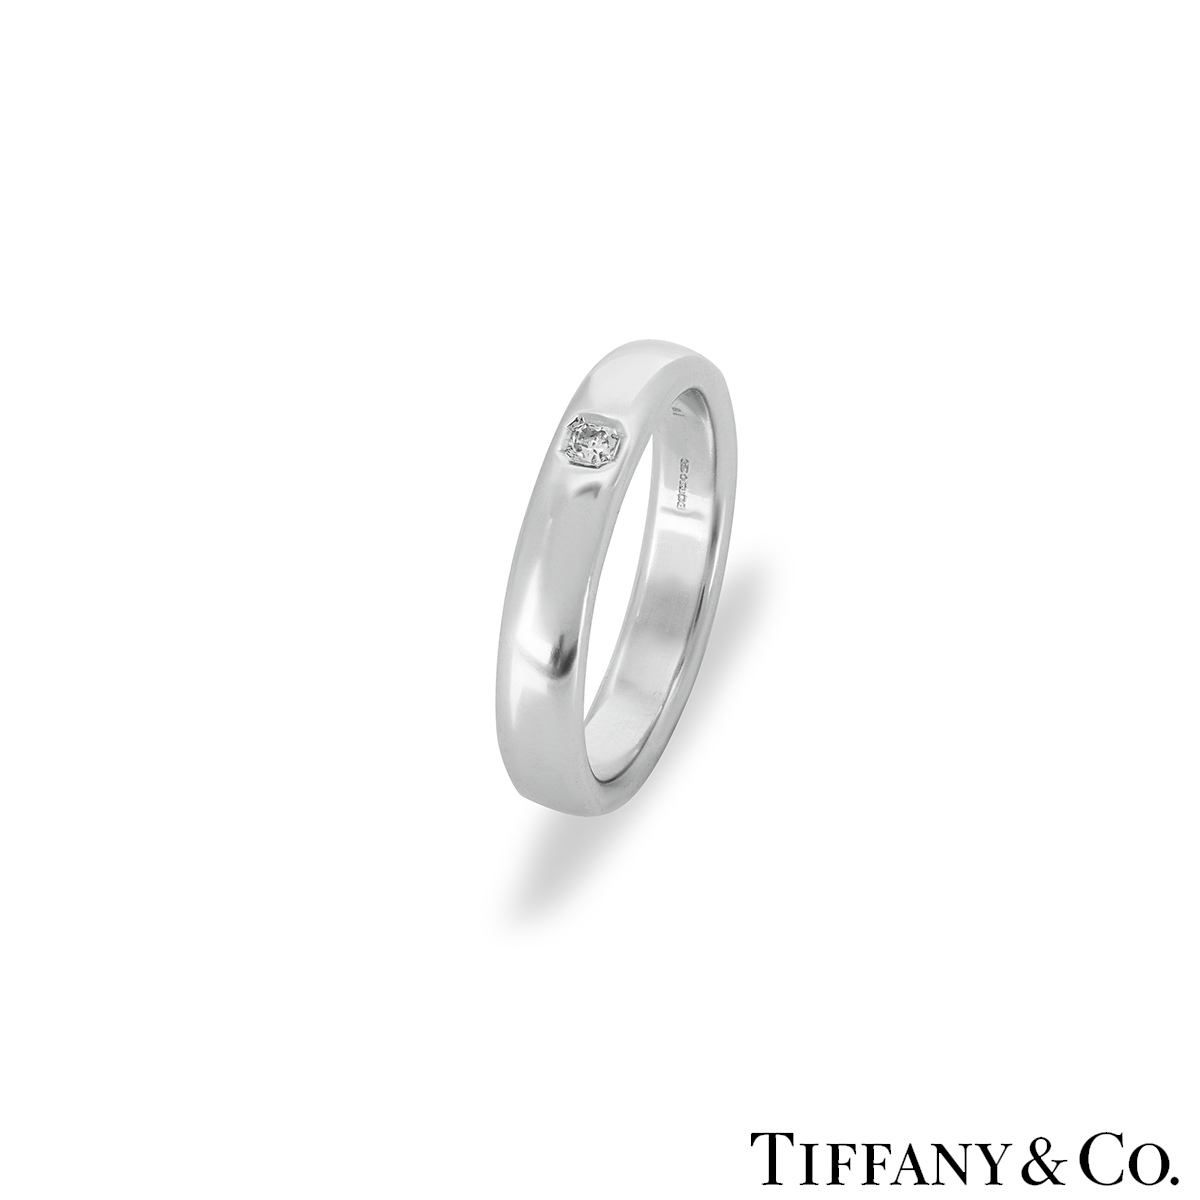 Tiffany & Co Lucida Diamond Wedding Ring in Platinum